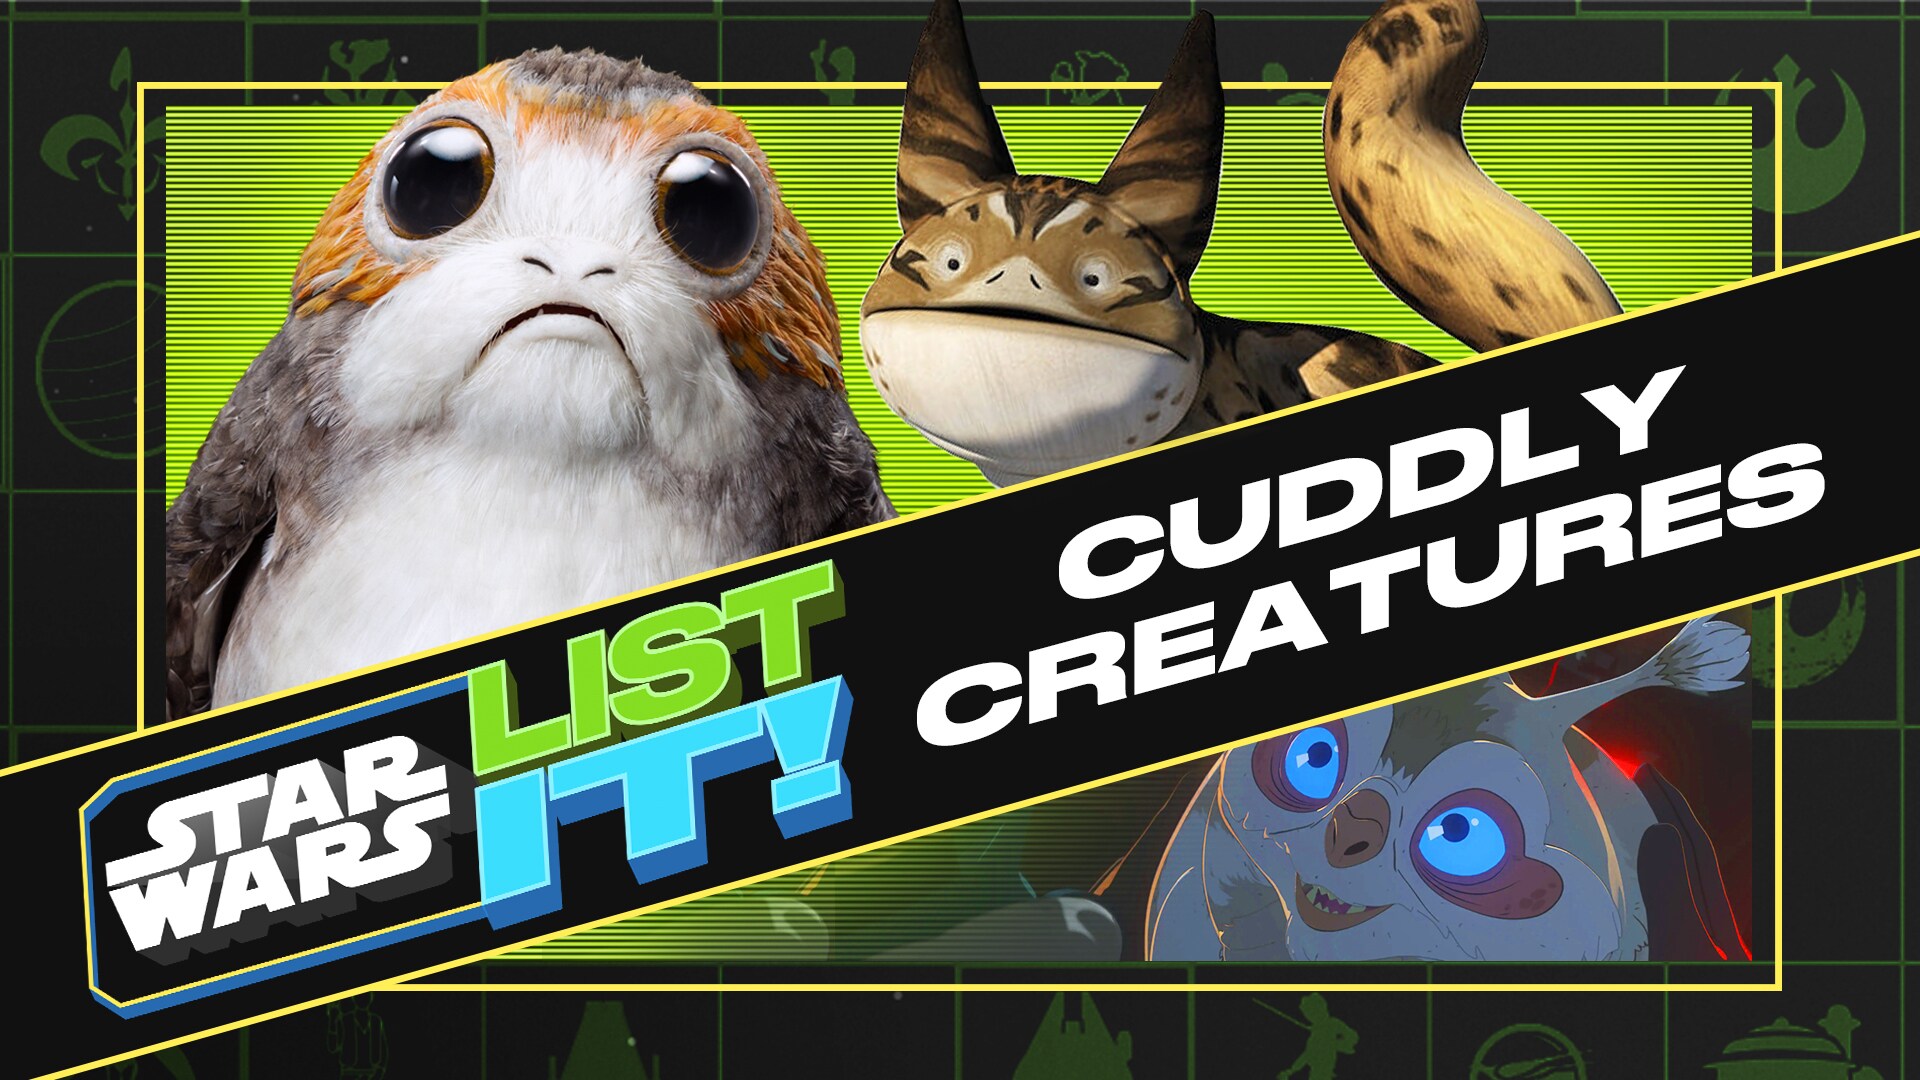 6 Cuddly Star Wars Creatures | Star Wars: List It!